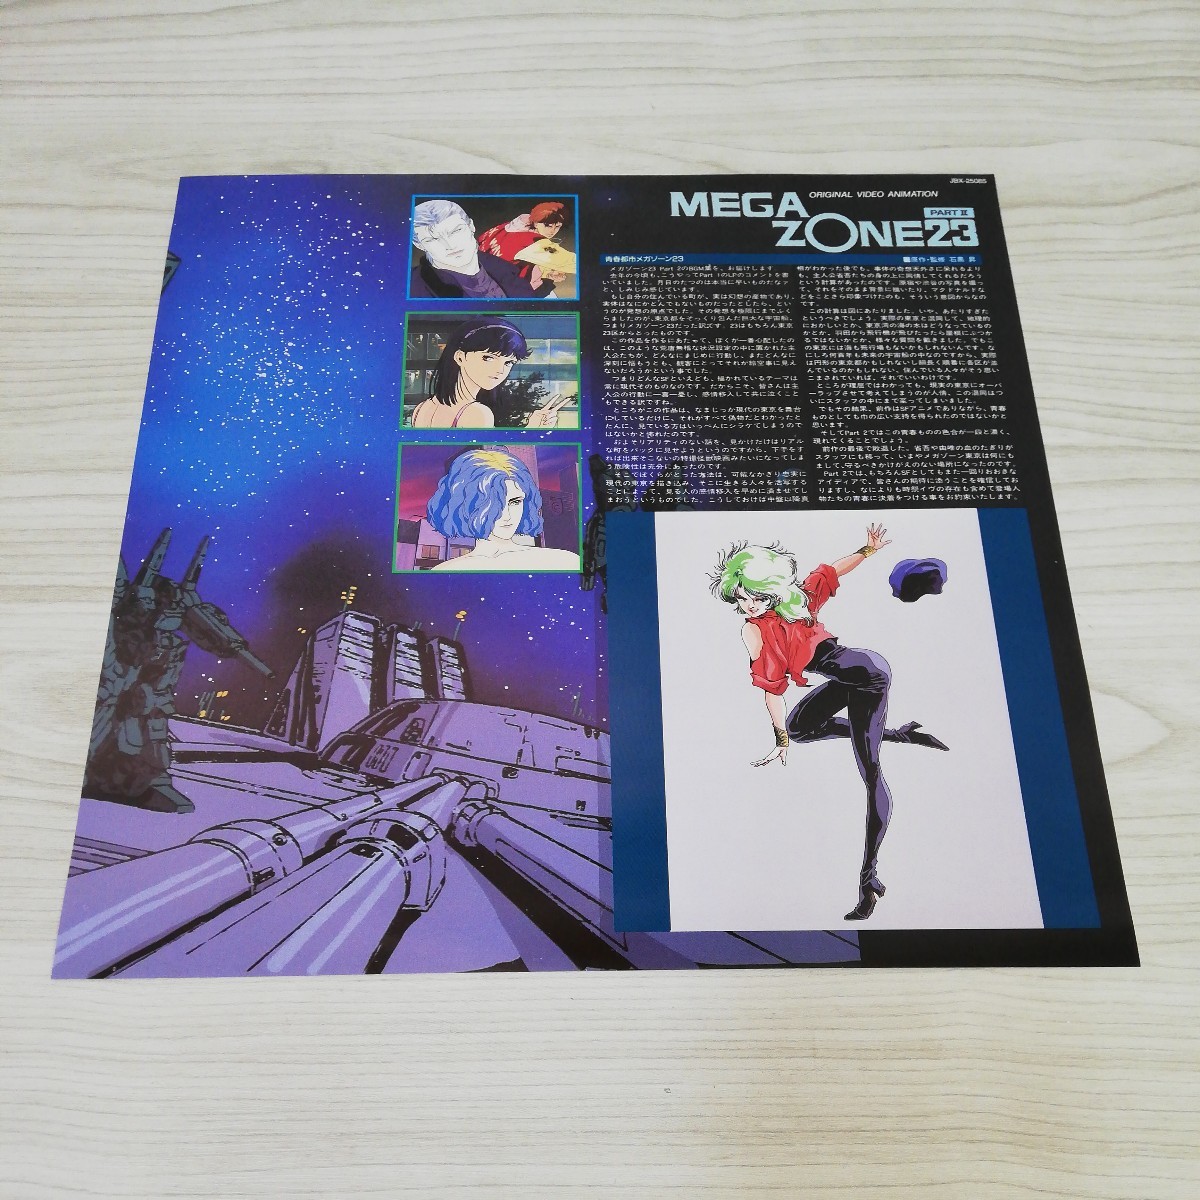 超人気メガゾーン23 オリジナル・サウンドトラック CD まとめ アニメ